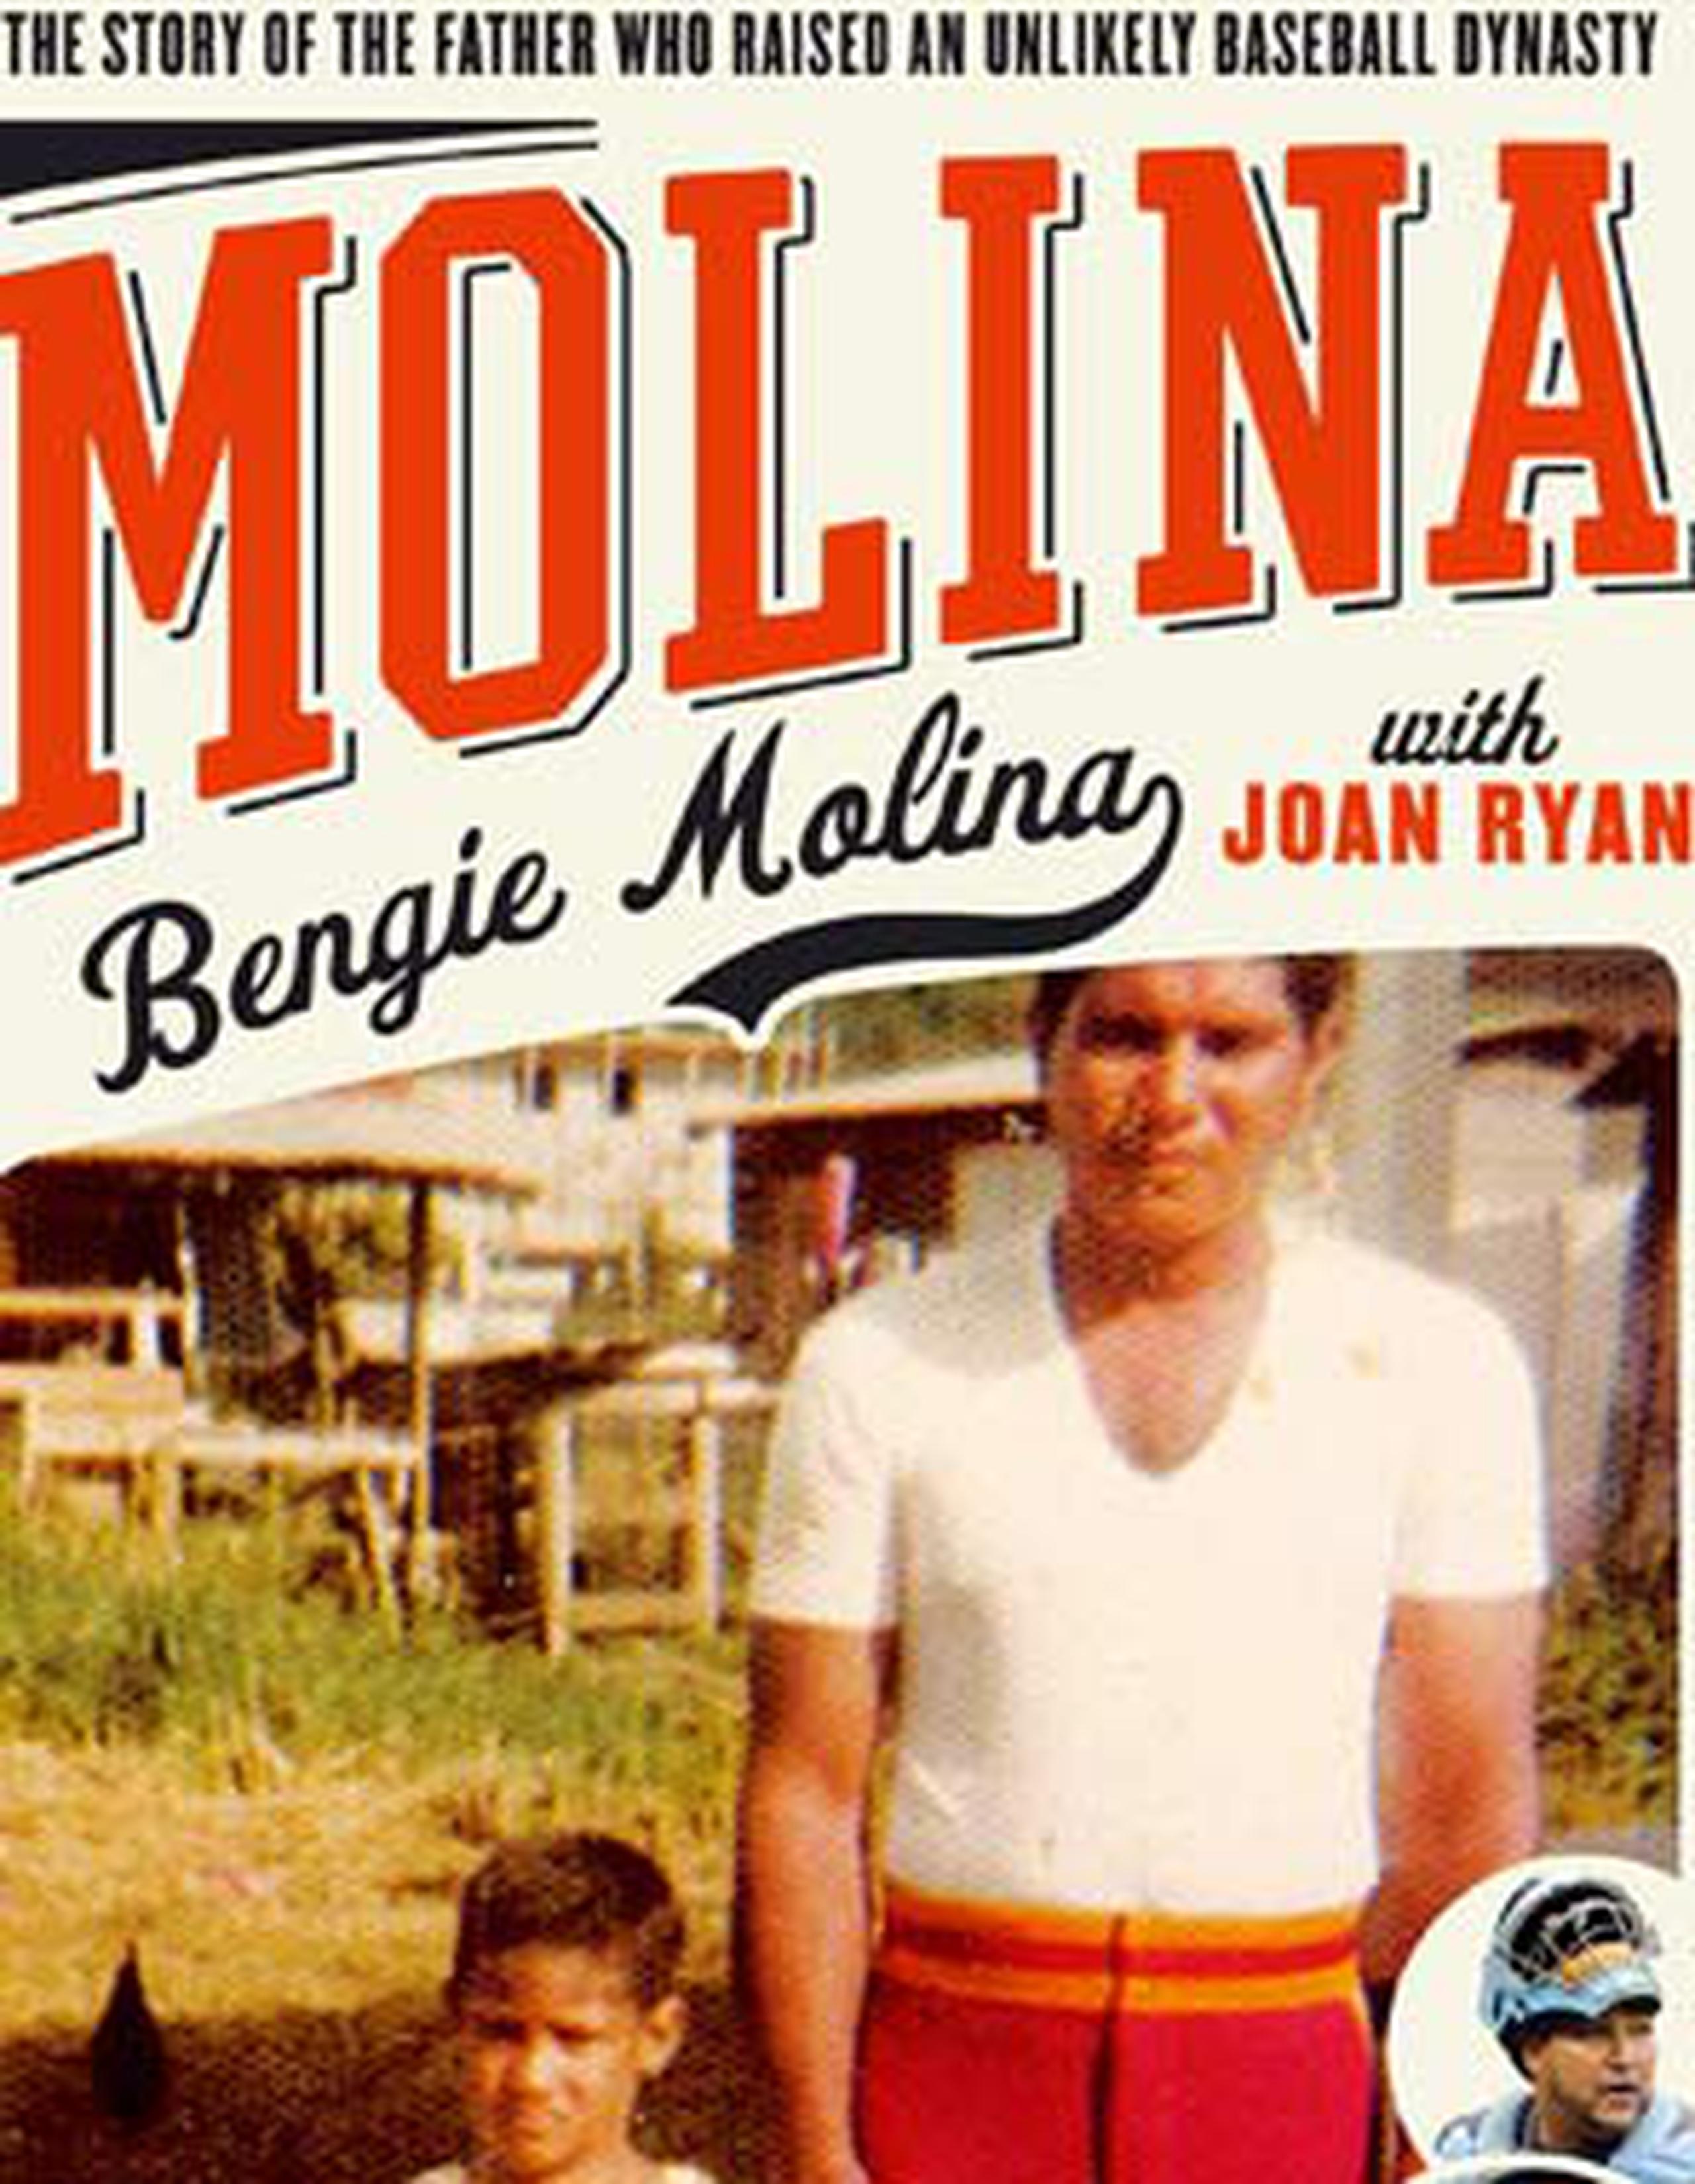 El próximo 12 de mayo saldrá al mercado el libro Molina: La historia del padre responsable de la dinastía más improbable, de la autora Joan Ryan. (Suministrada)